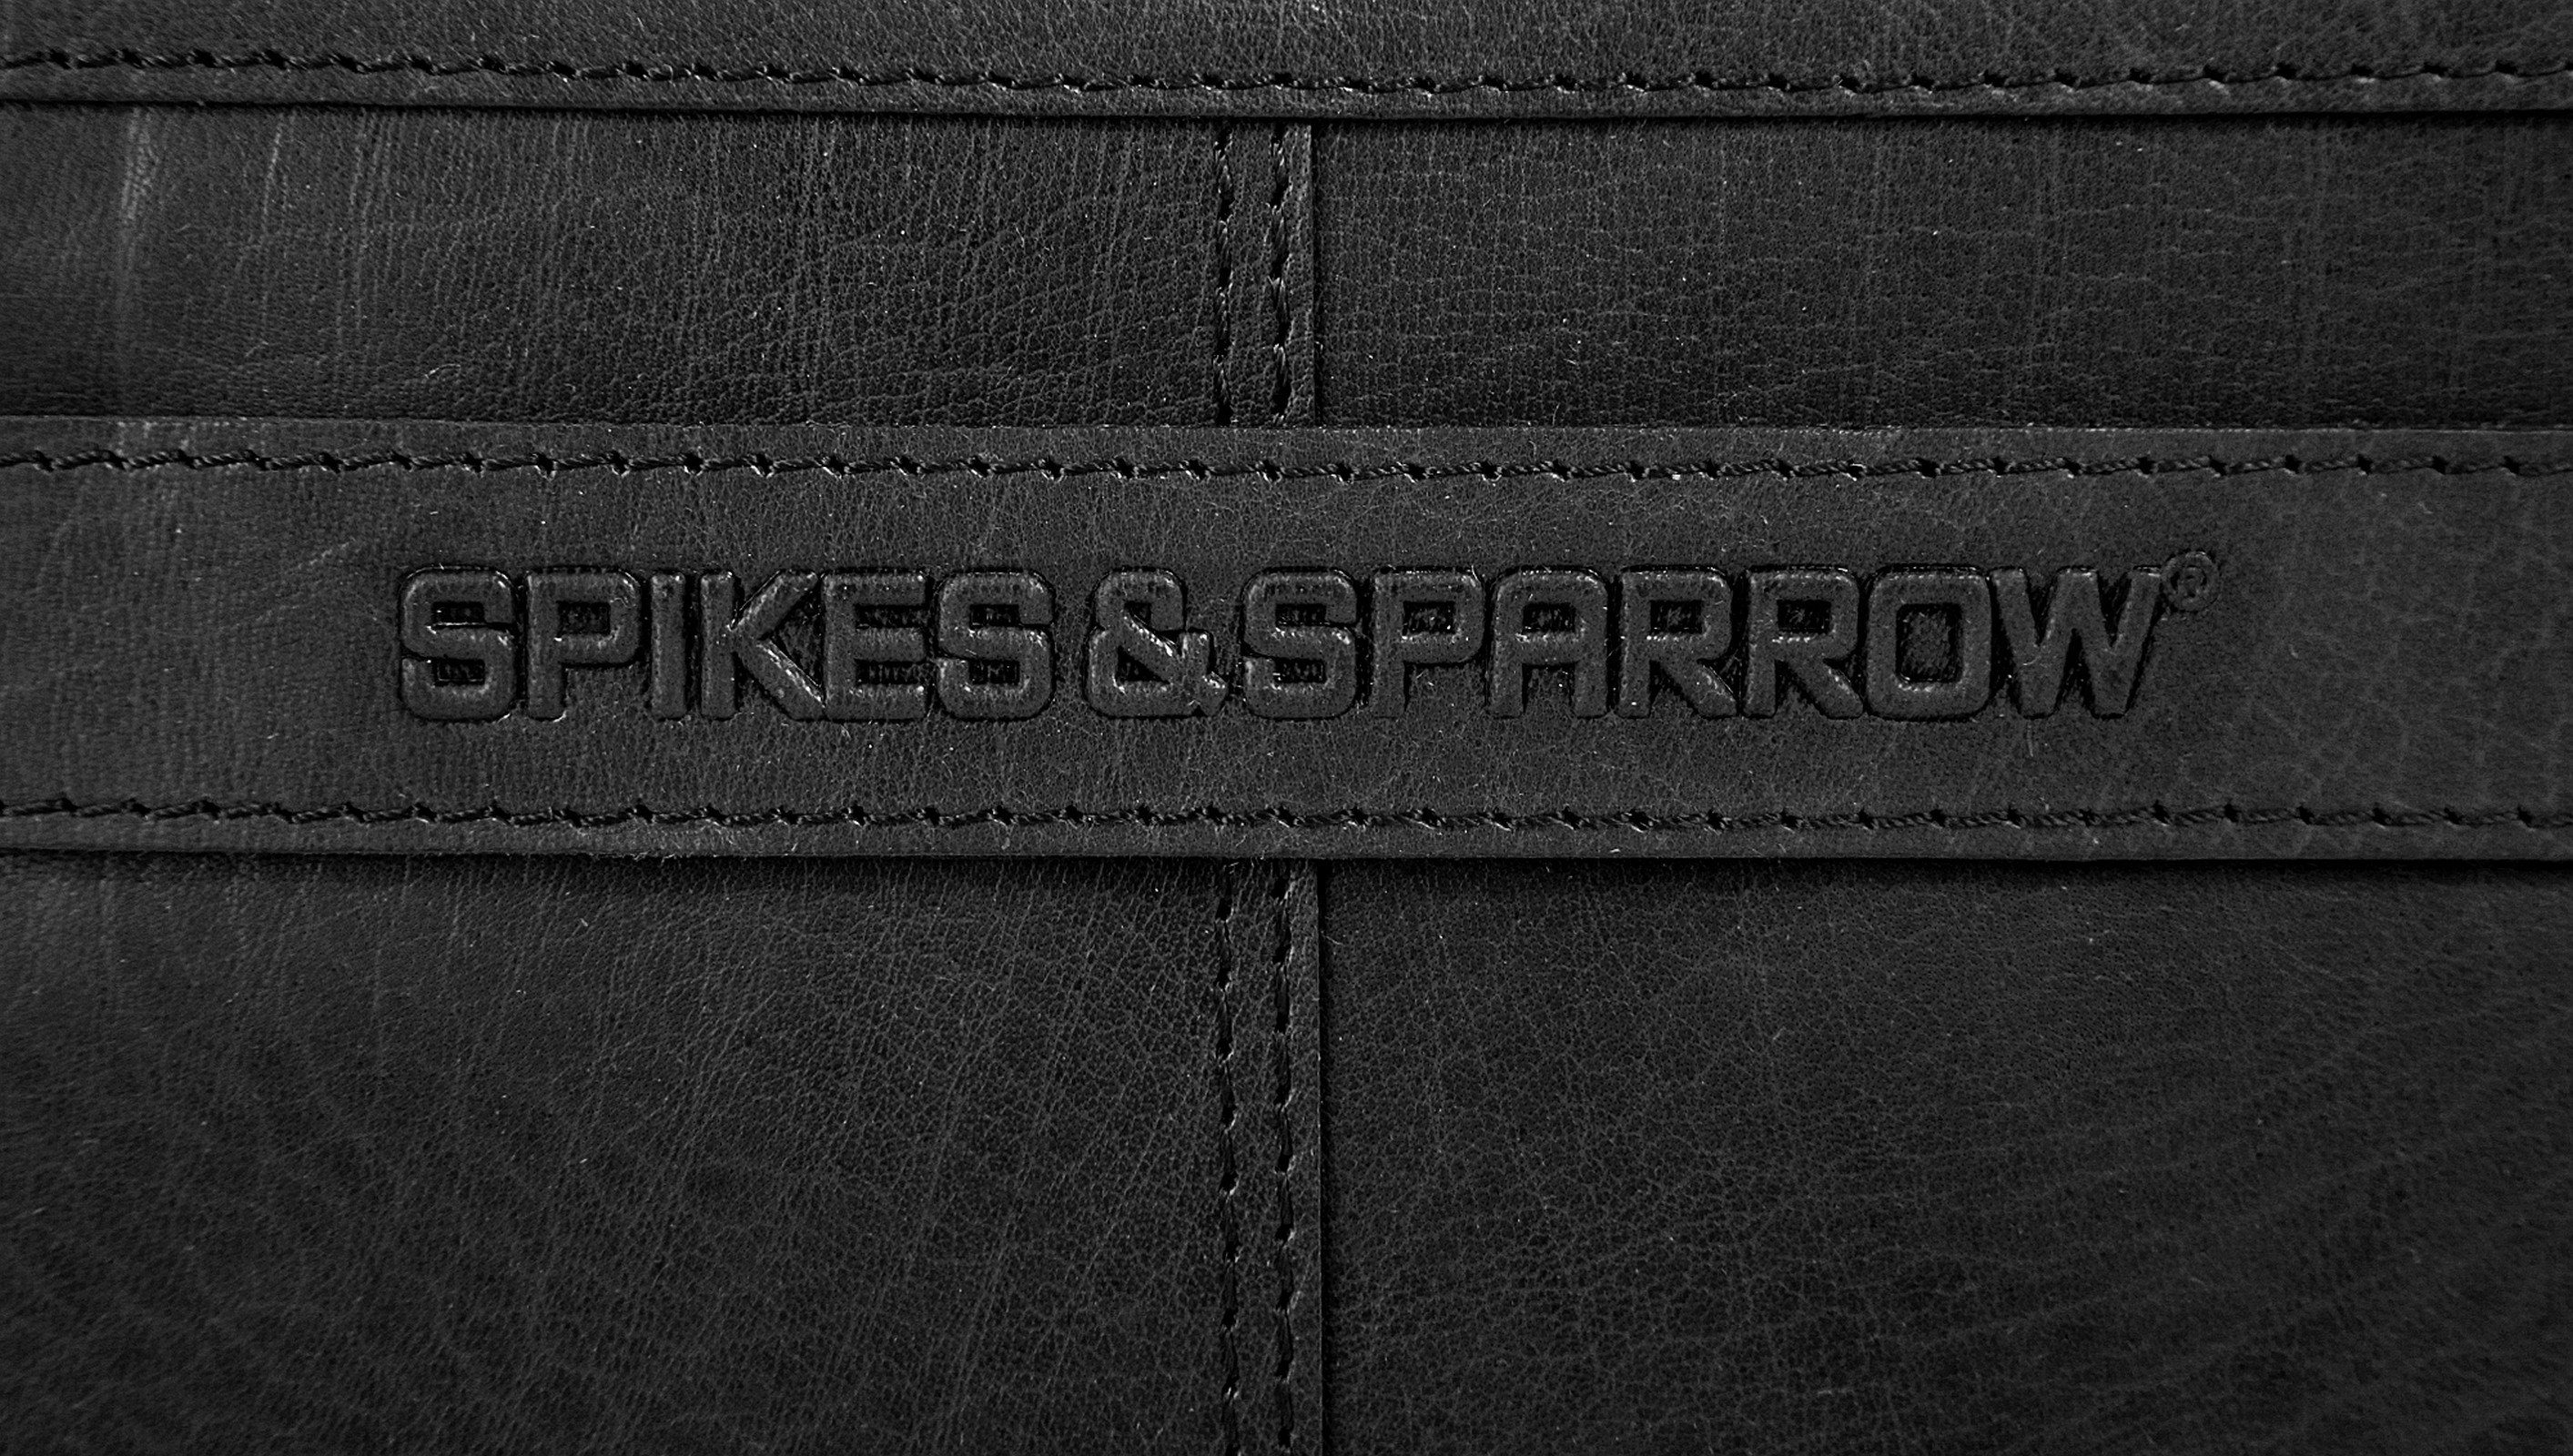 Sparrow schwarz & Leder Aktentasche, Spikes echt